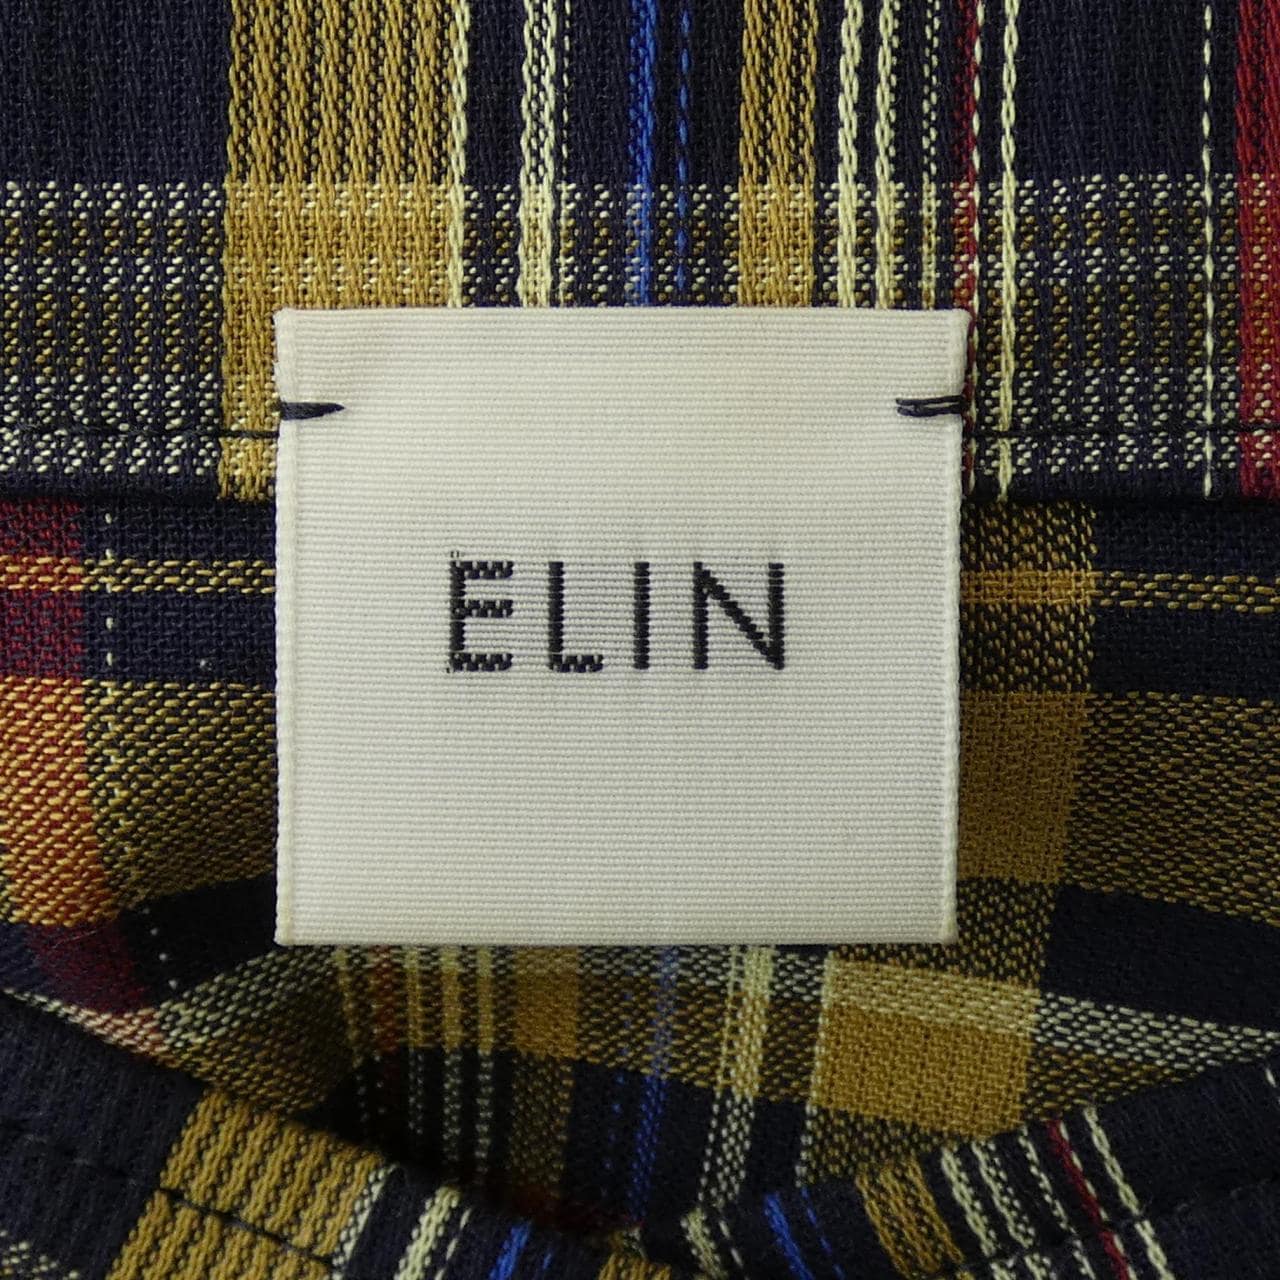 Erin ELIN shirt